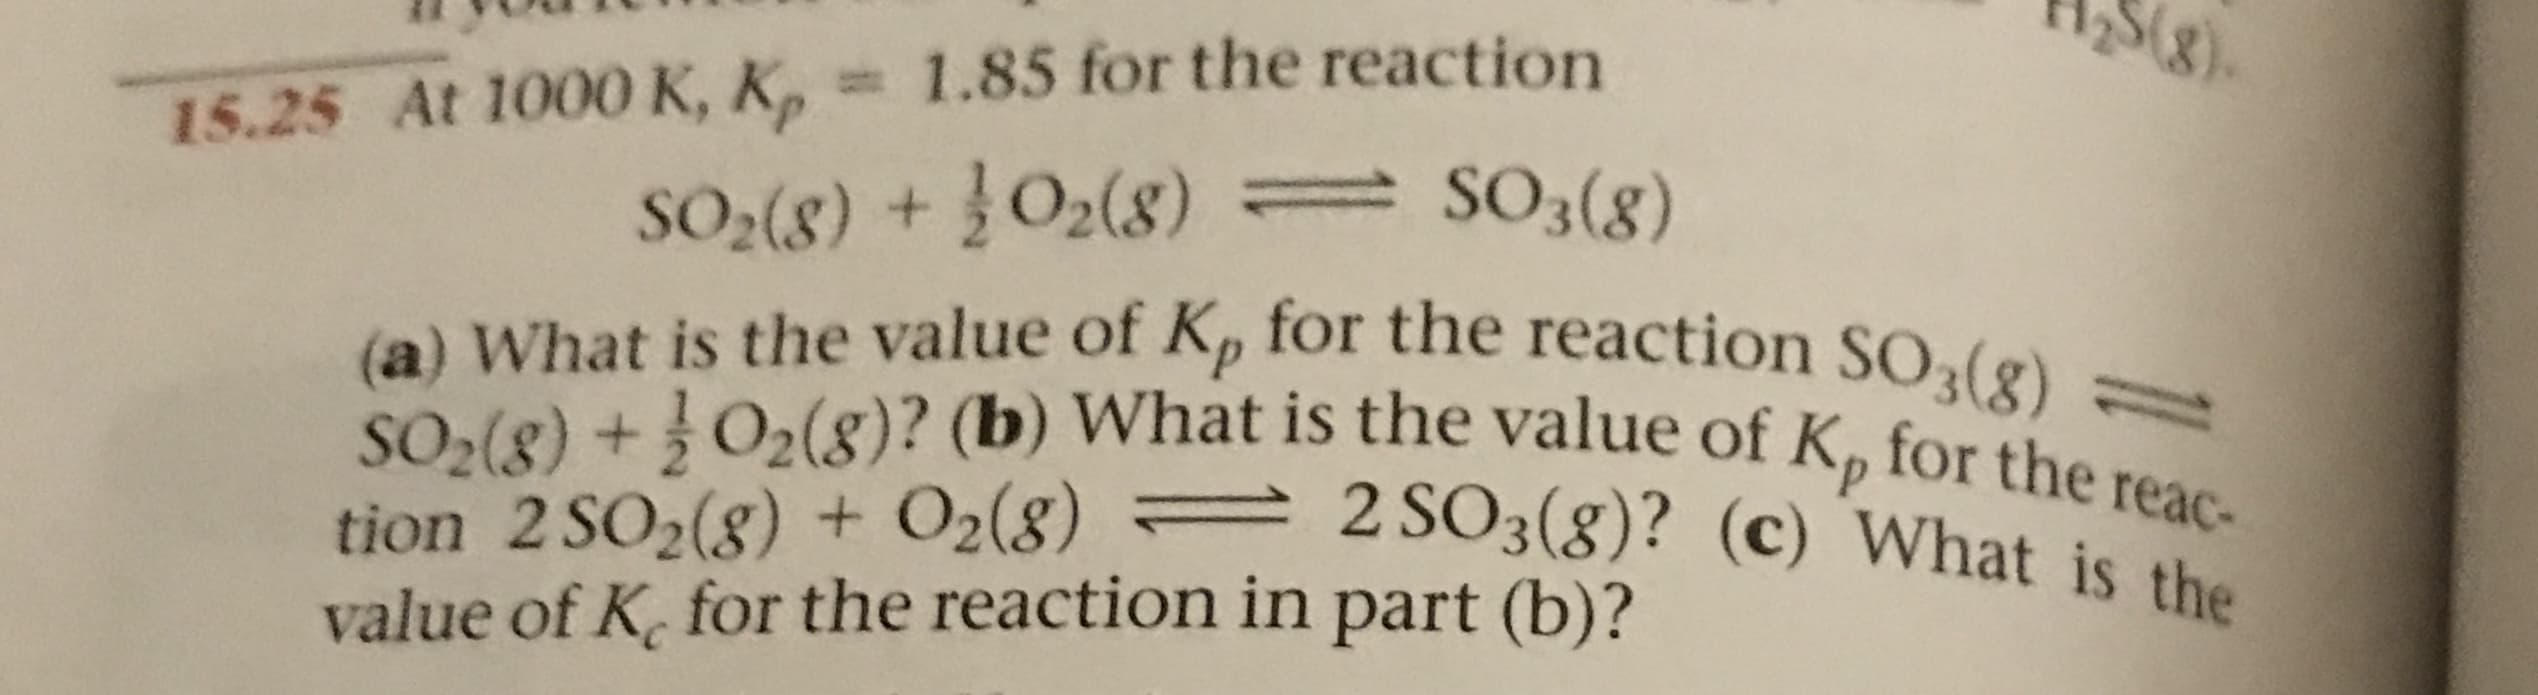 258)
15.25 At 1000 K, K, 1.85 for the reaction
S2(8) +O2(8) SO3(8)
(a) What is the value of Kp for the reaction SO3(8)-
tion 2 SO2(g) + O2(8) 2 SO3(g)? (c) What is the
value of K for the reaction in part (b)?
SO2(8) +O2(8)? (b) What is the value of Kp for the reac-
